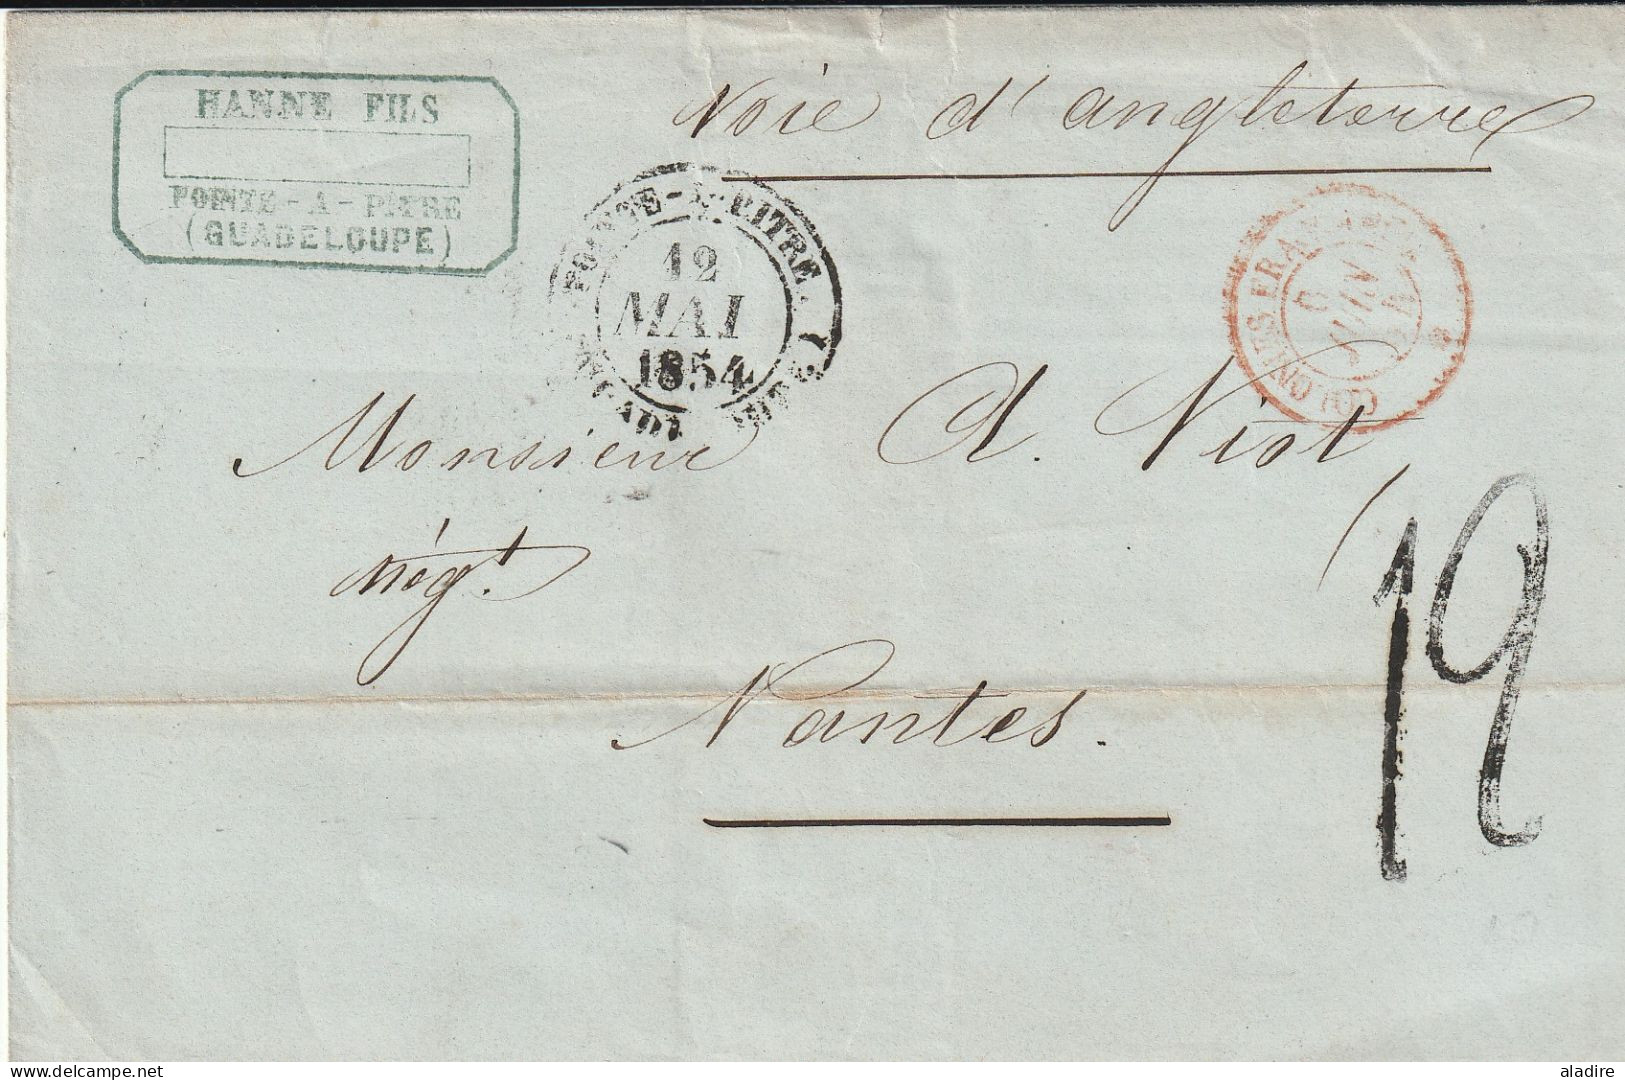 1818/1947 - petite collection de 18 lettres maritimes, carte postale, enveloppes, 1 devant de GUADELOUPE  (36 scans)